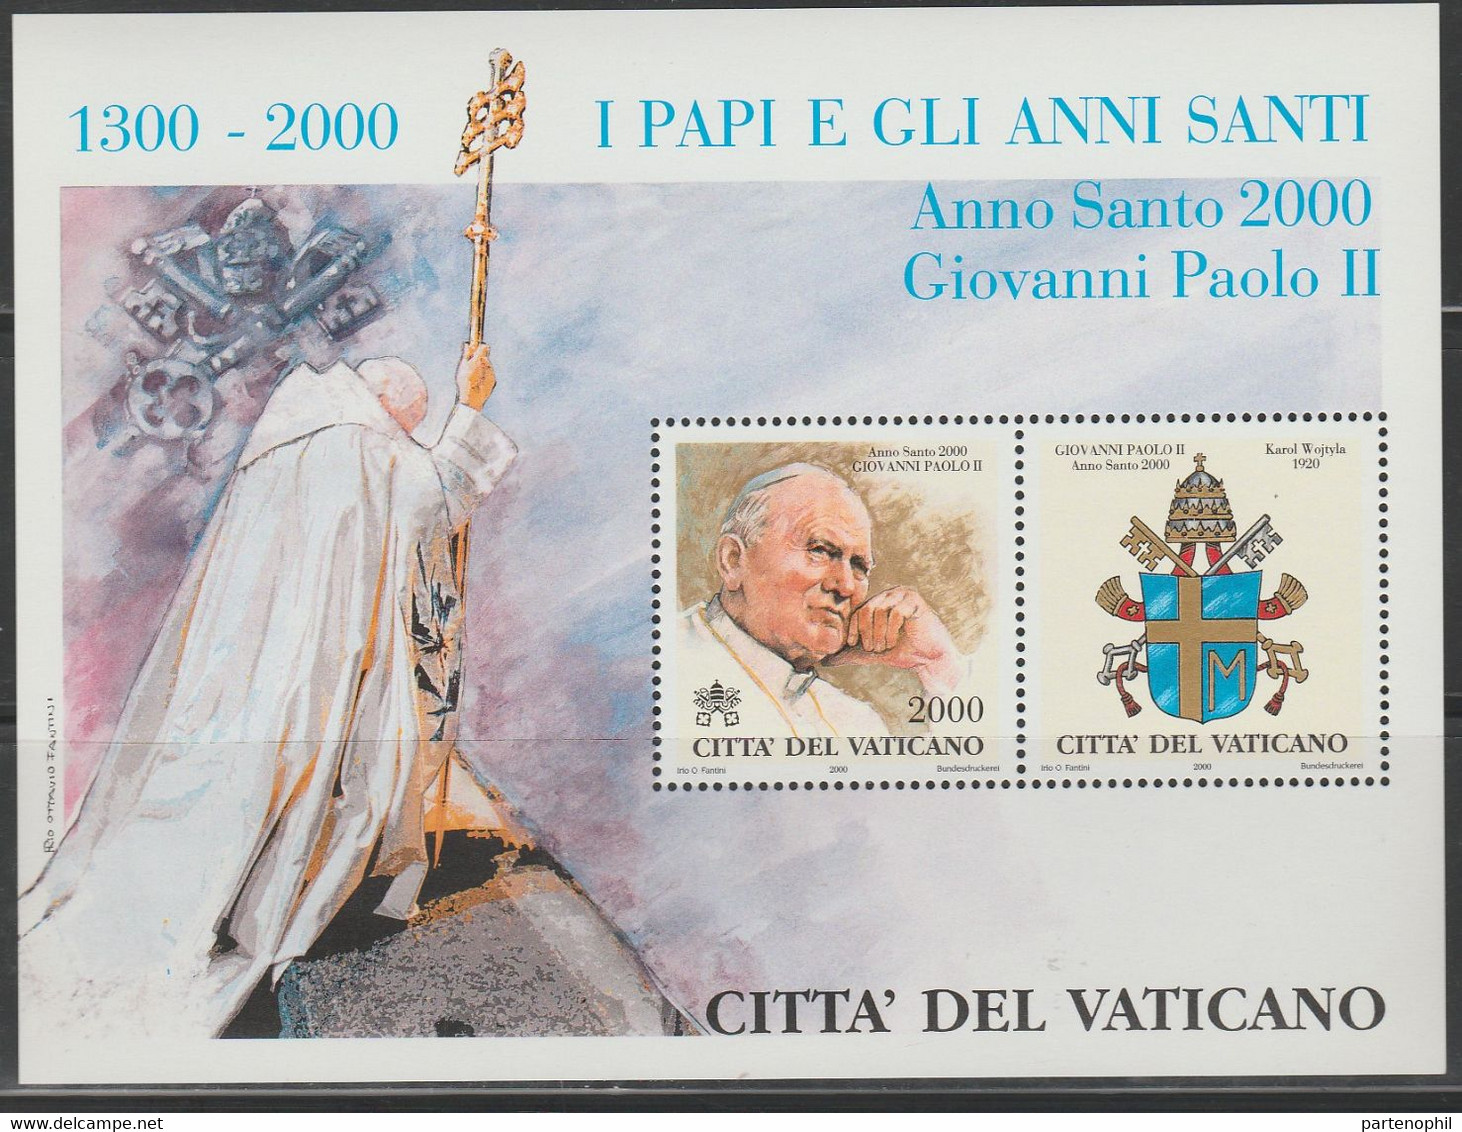 Vaticano 2000 - Papi E Gli Anni Santi  MNH - Carnets